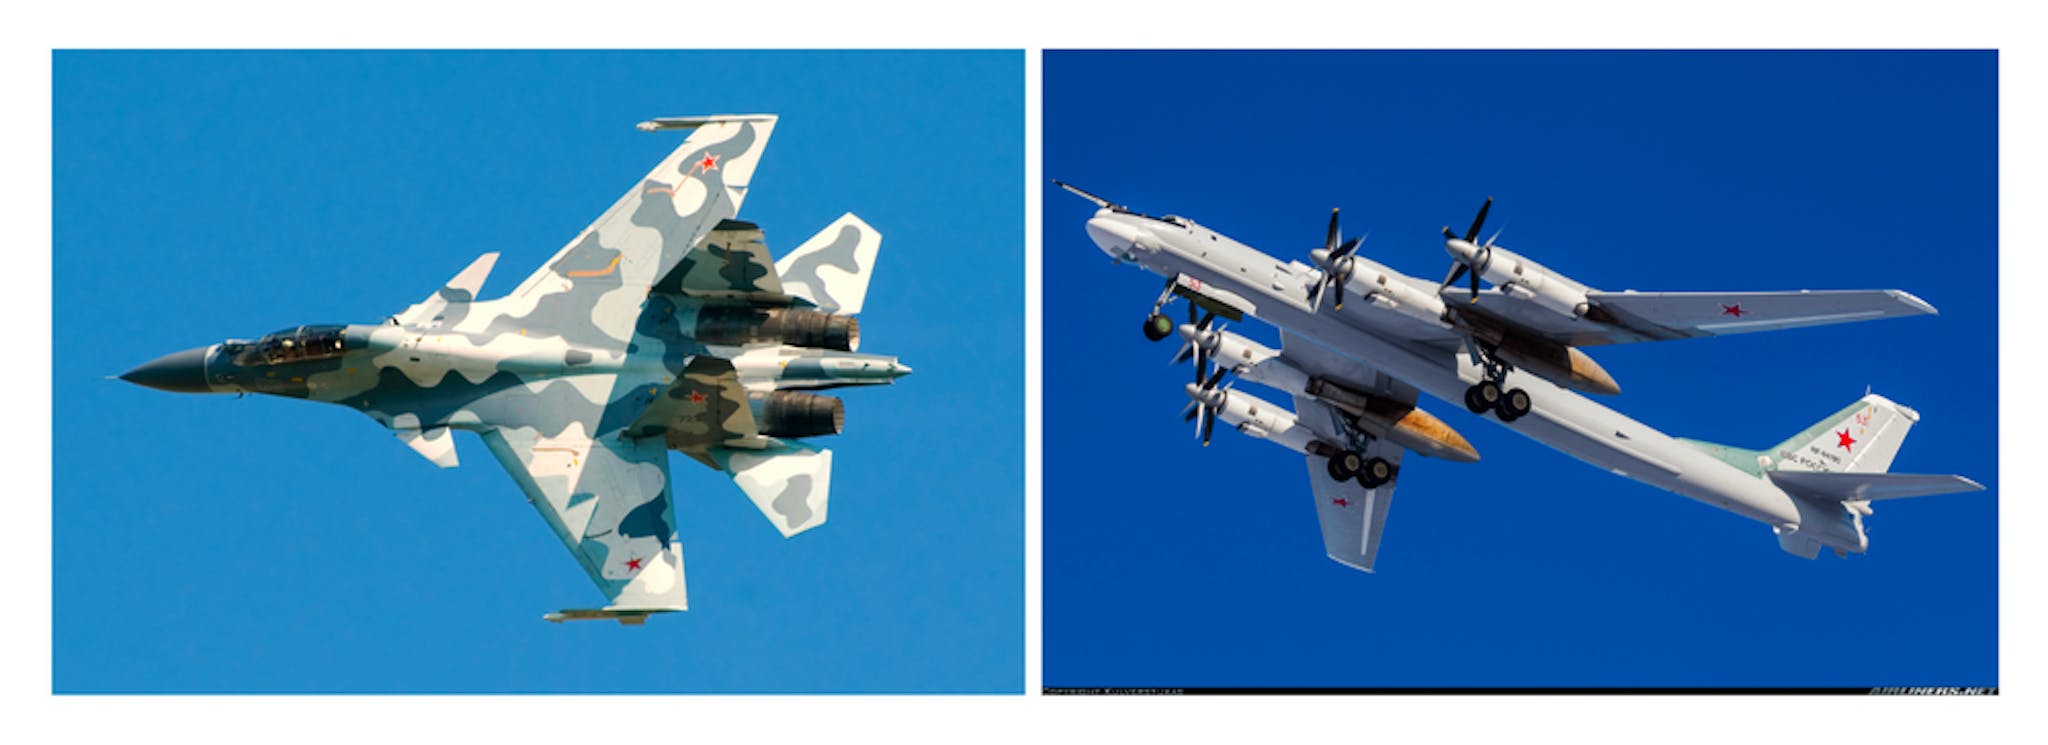 De gauche à droite : (1) Su-30, (2) Tu-95